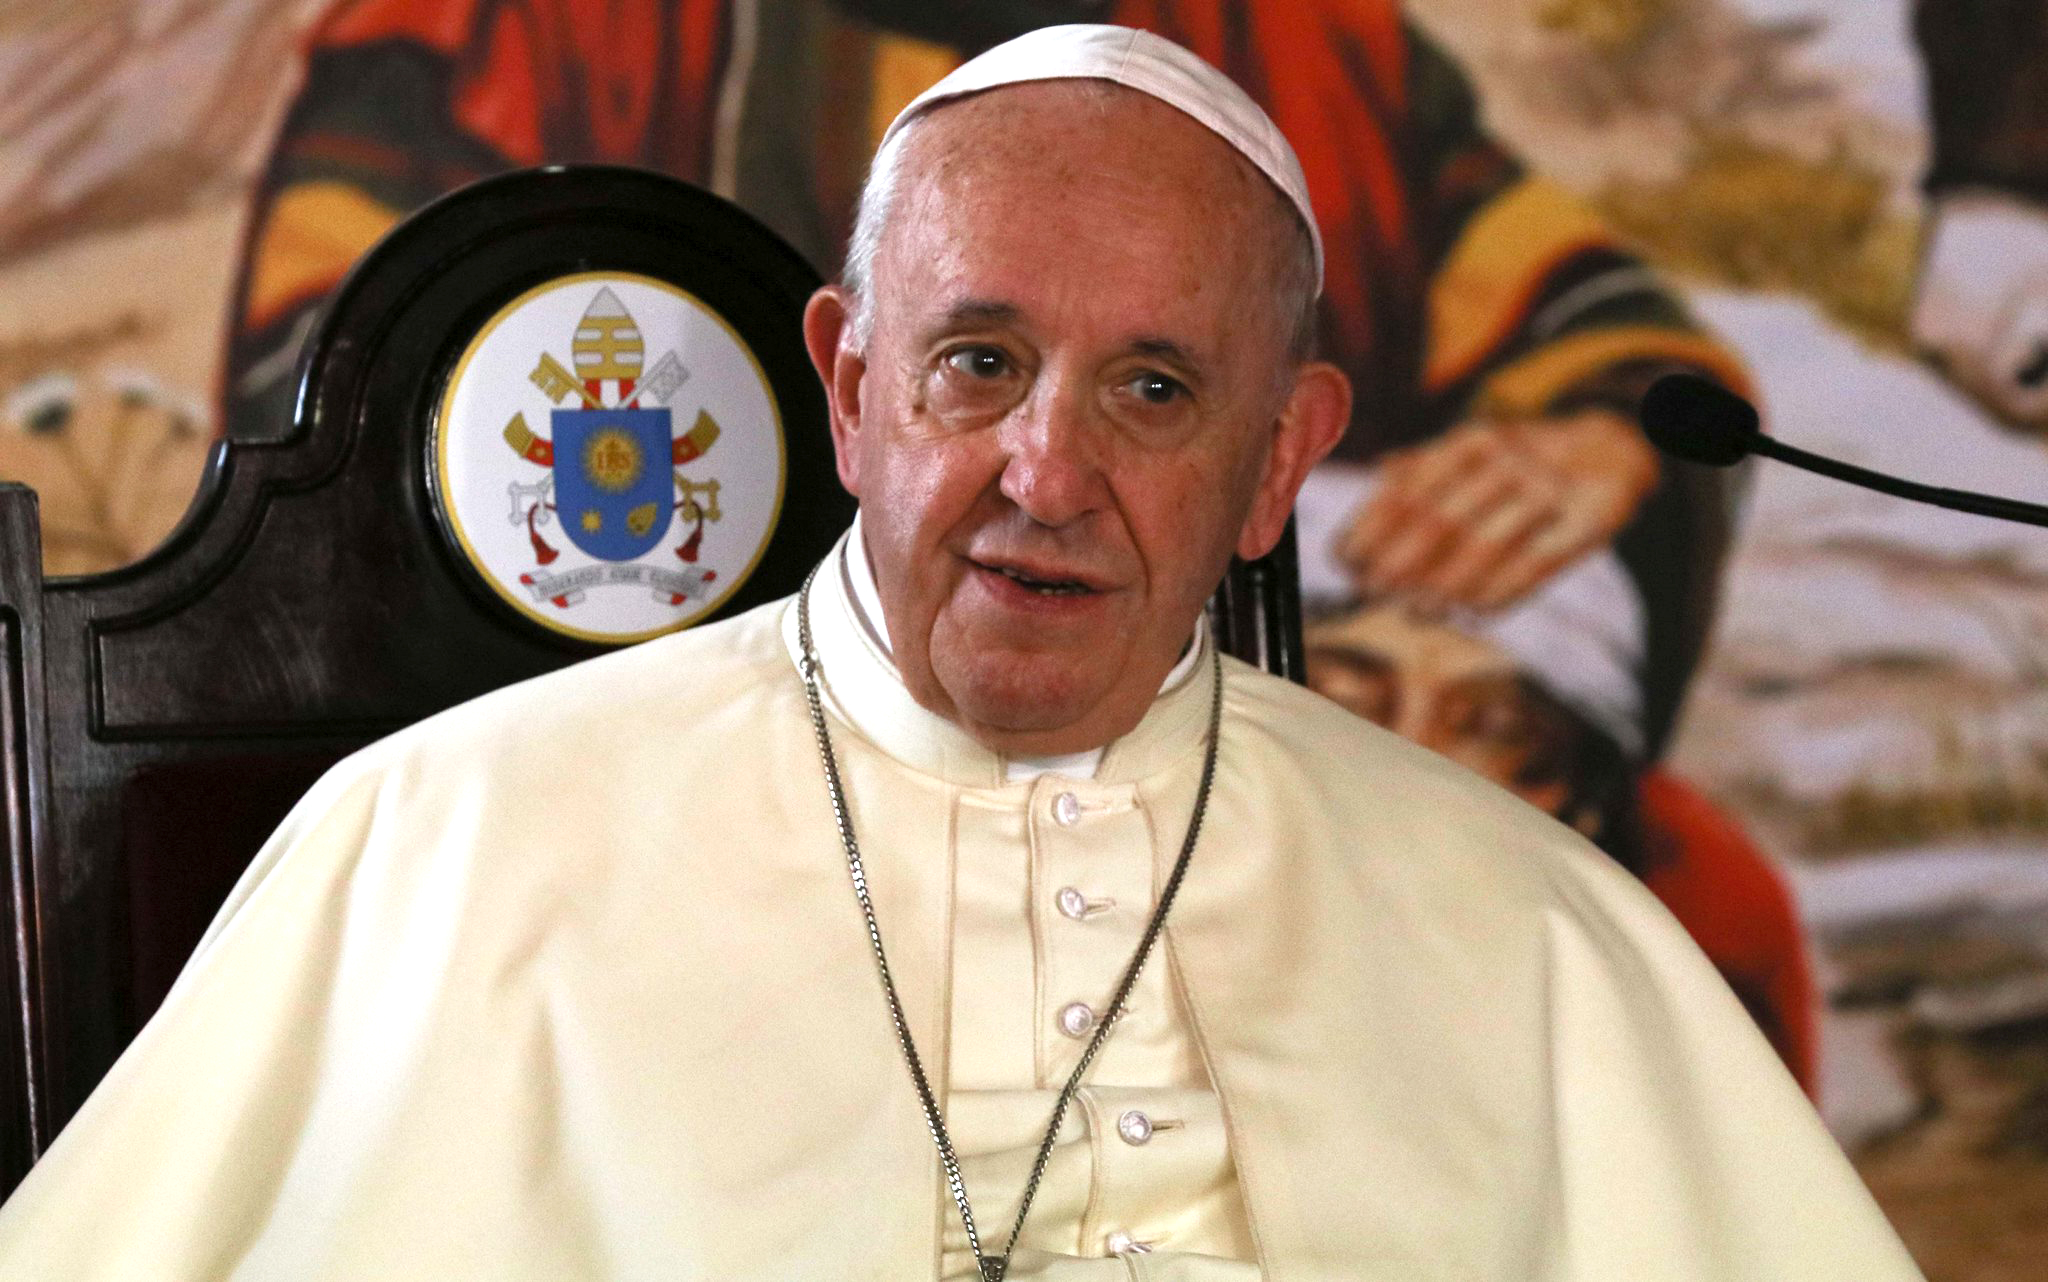 Vaticano brinda elementos útiles para comprender documental sobre el Santo Padre